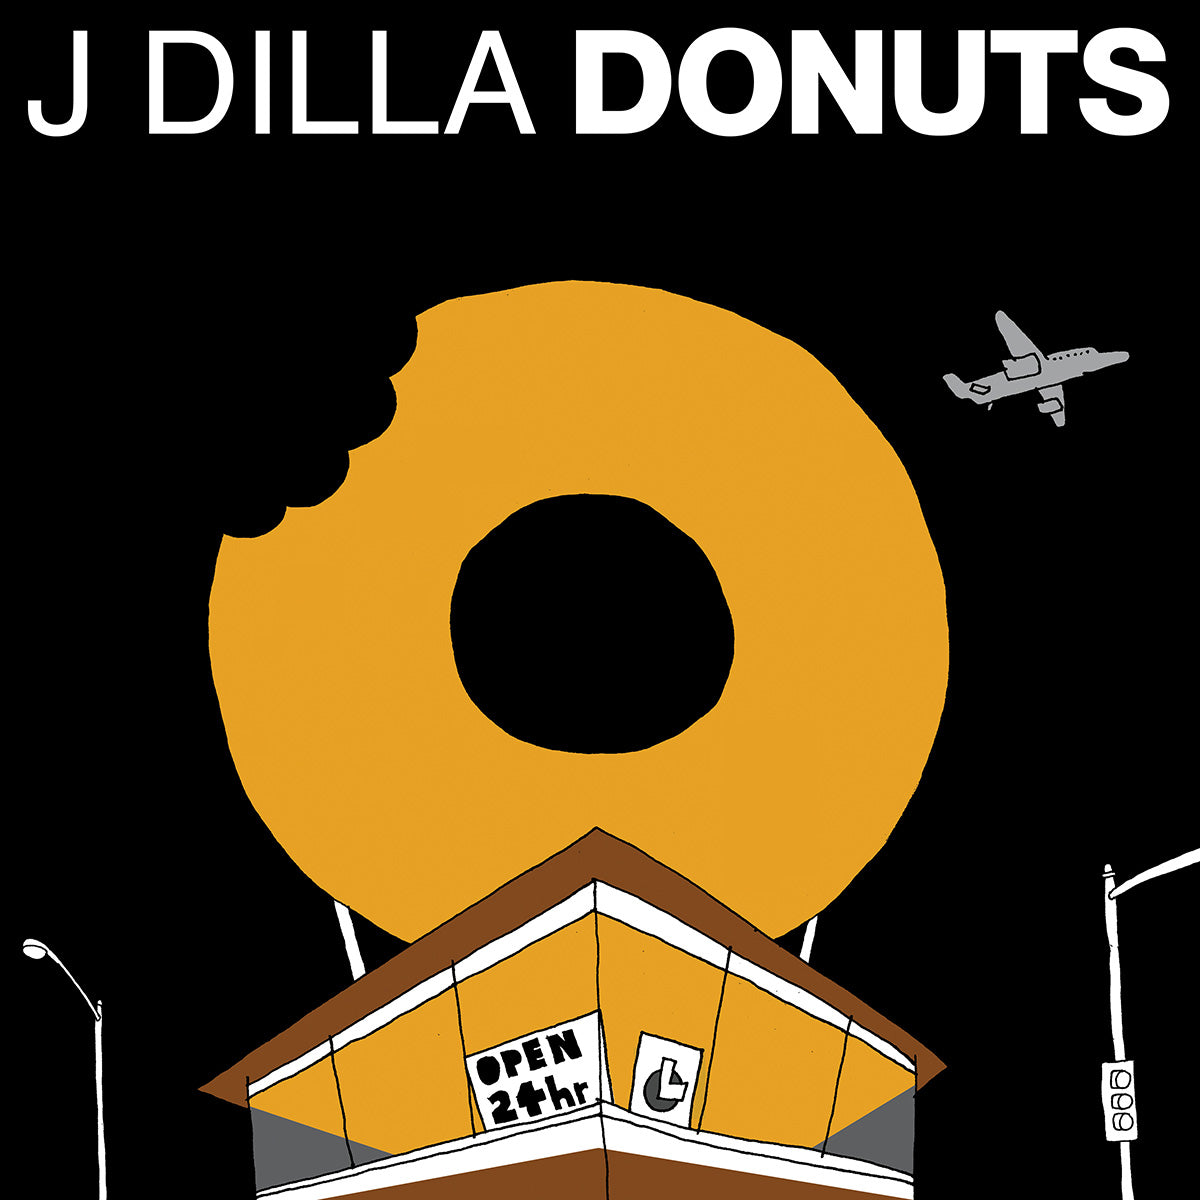 J Dilla "Donuts" 2LP